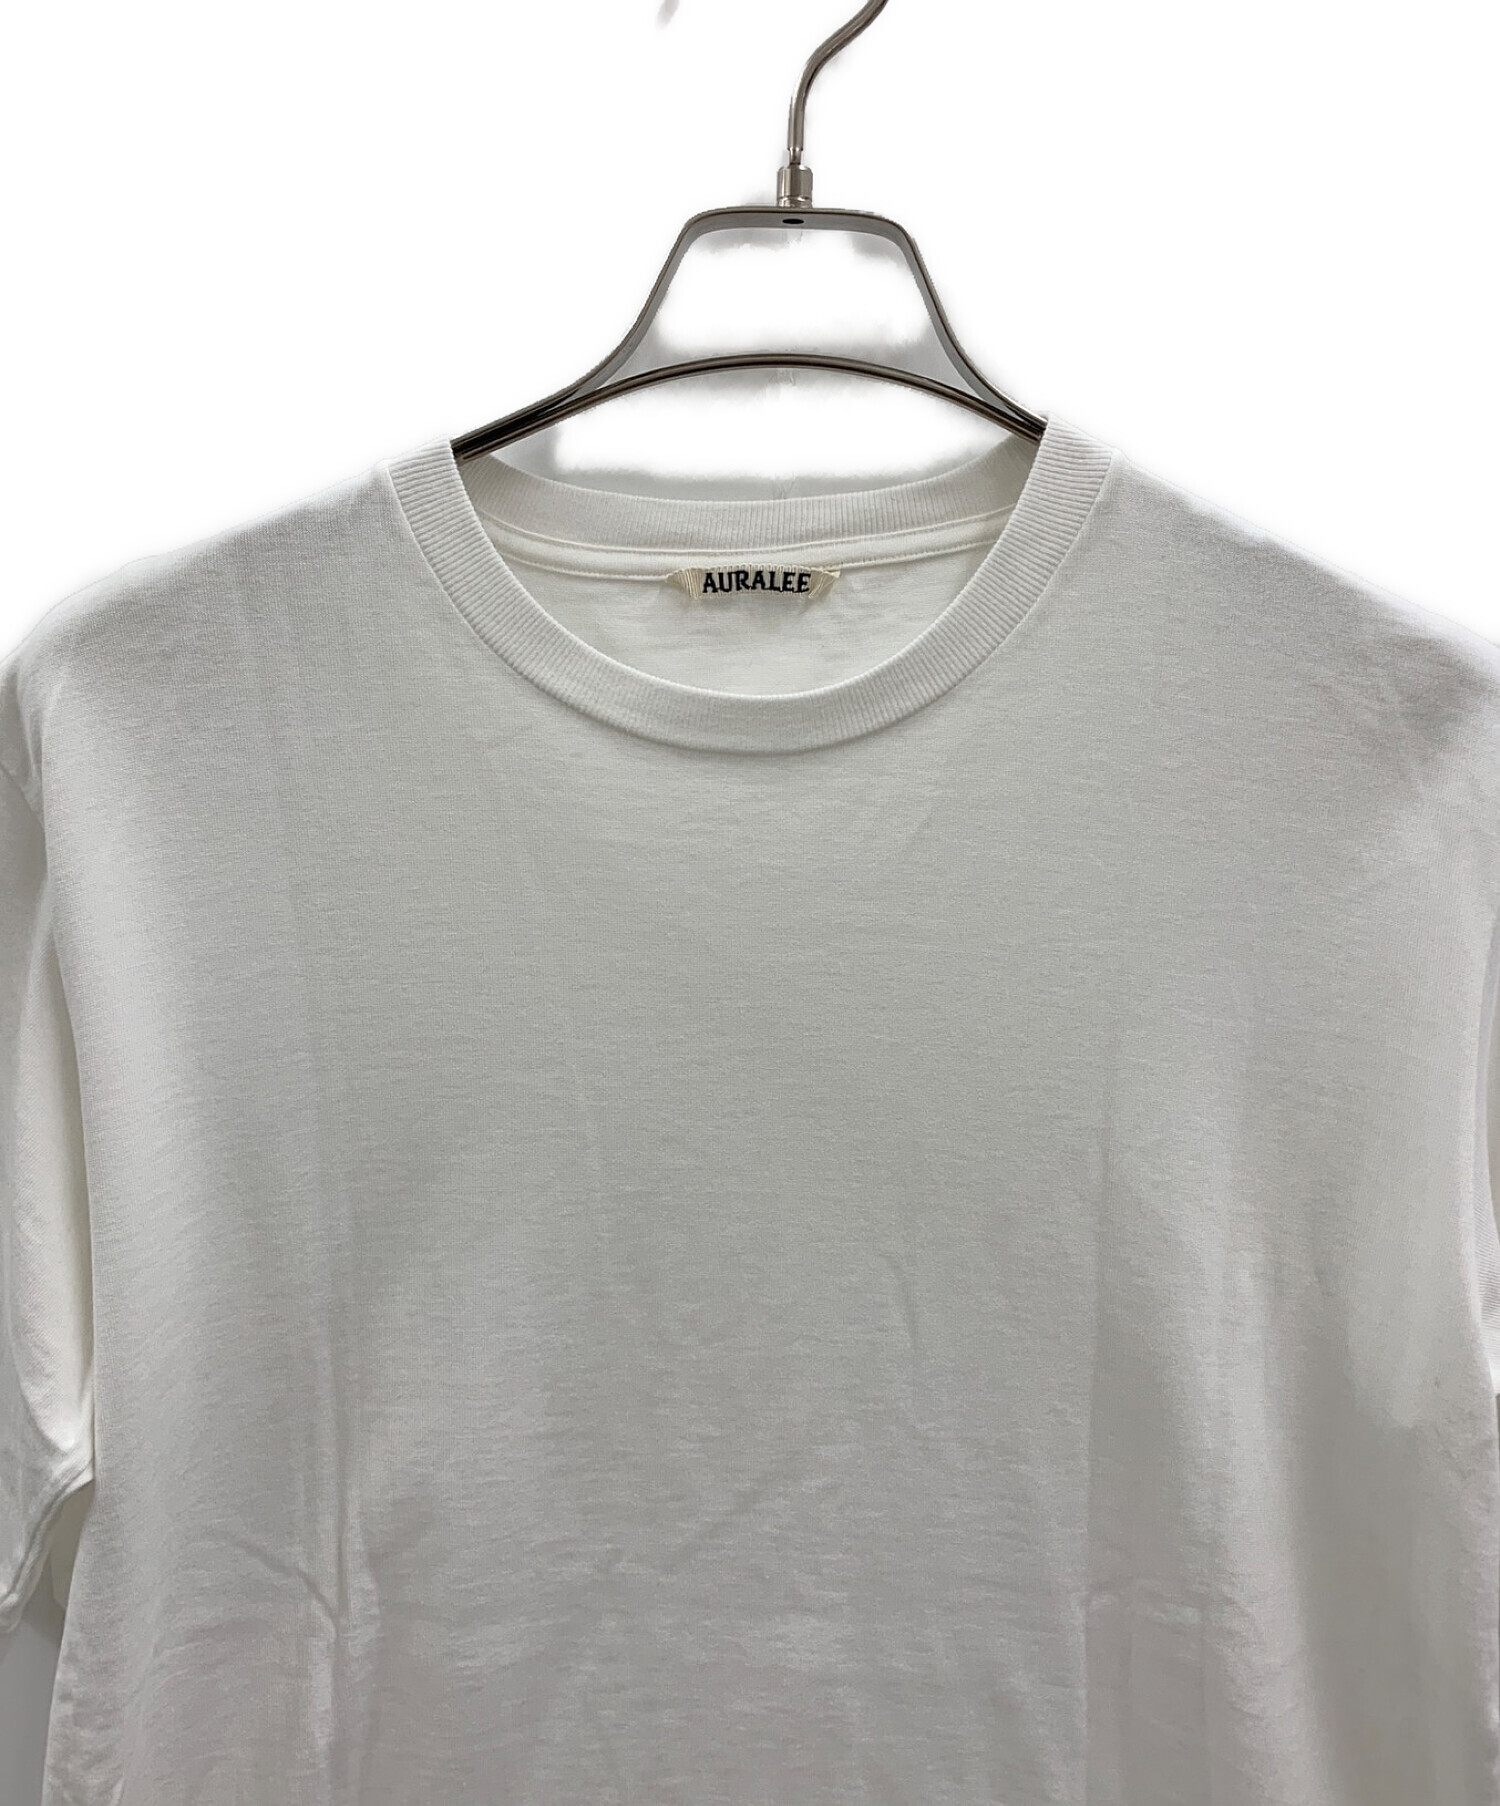 中古・古着通販】AURALEE (オーラリー) Tシャツ ホワイト サイズ:S 